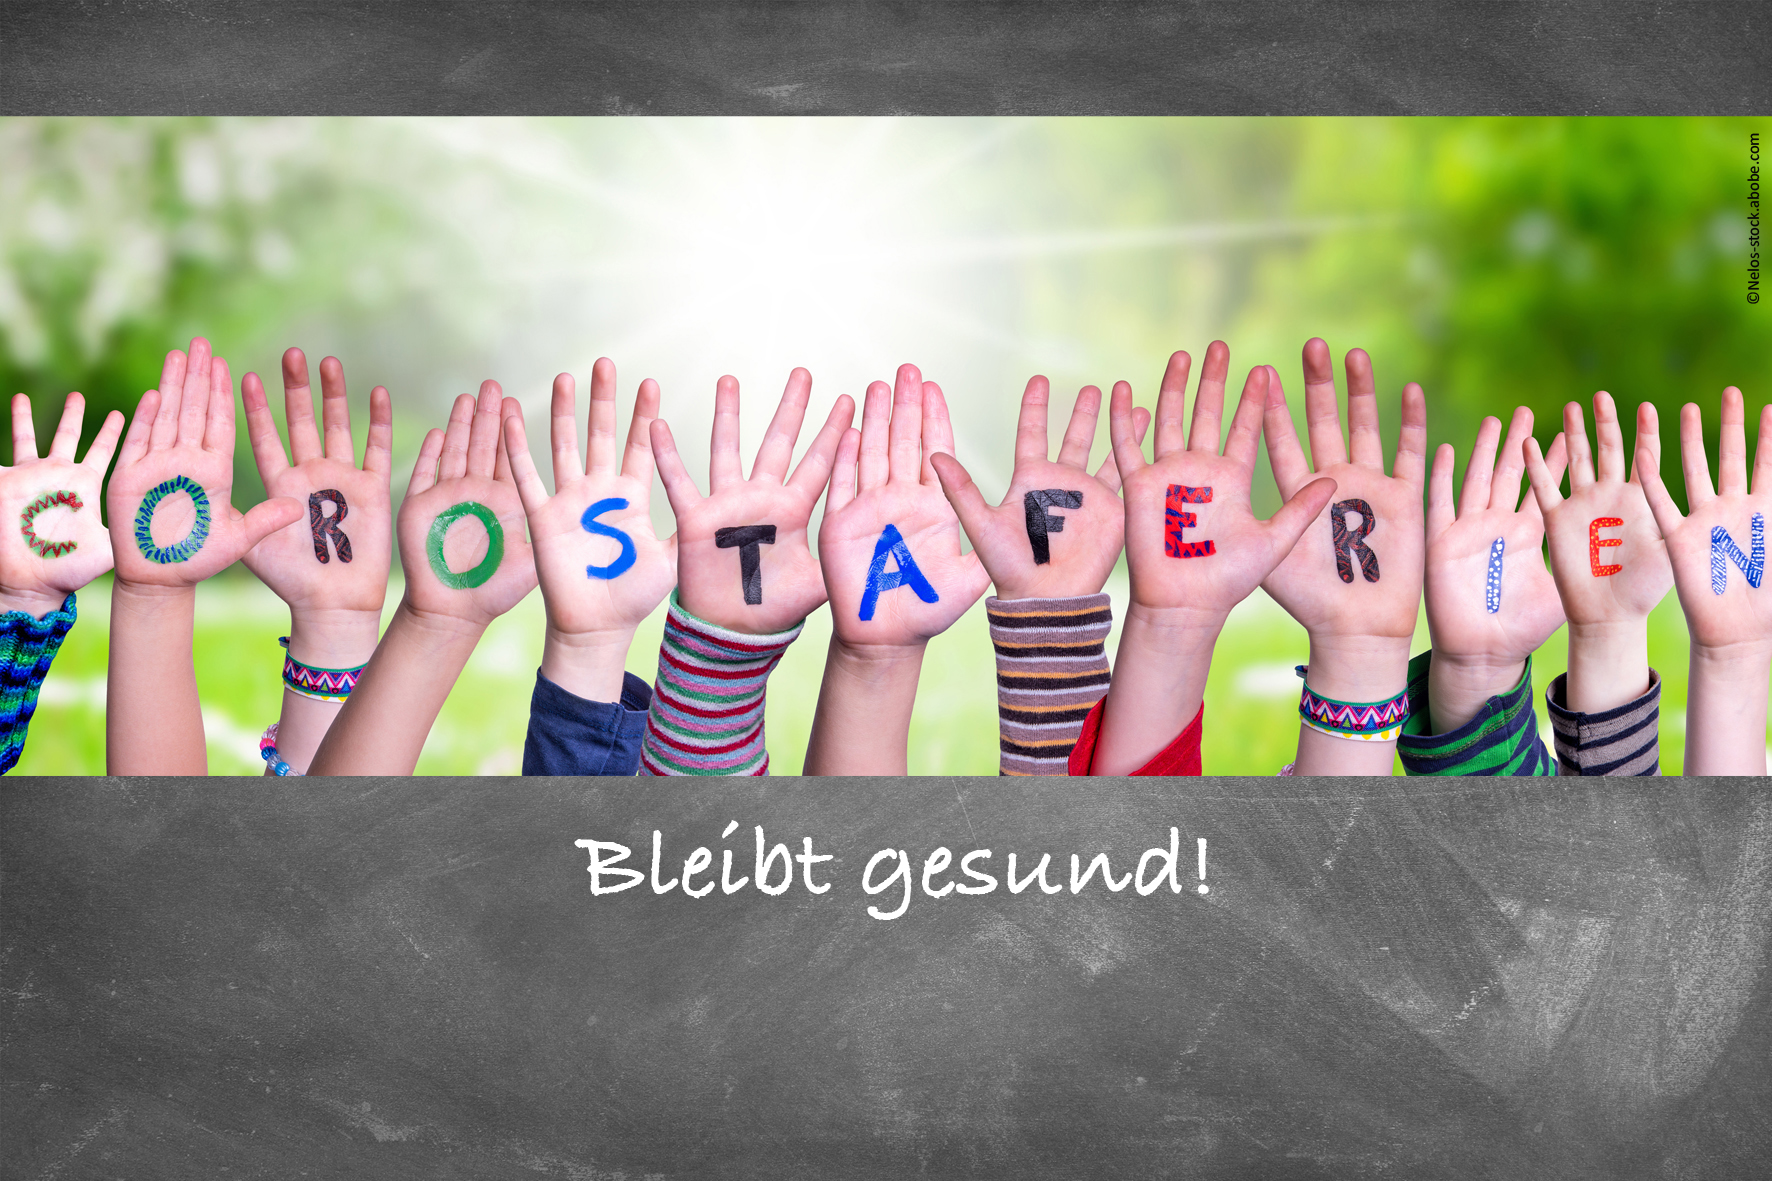 Ostergruß – Erasmus Frankfurter Stadtschule – ganztags und trilingual